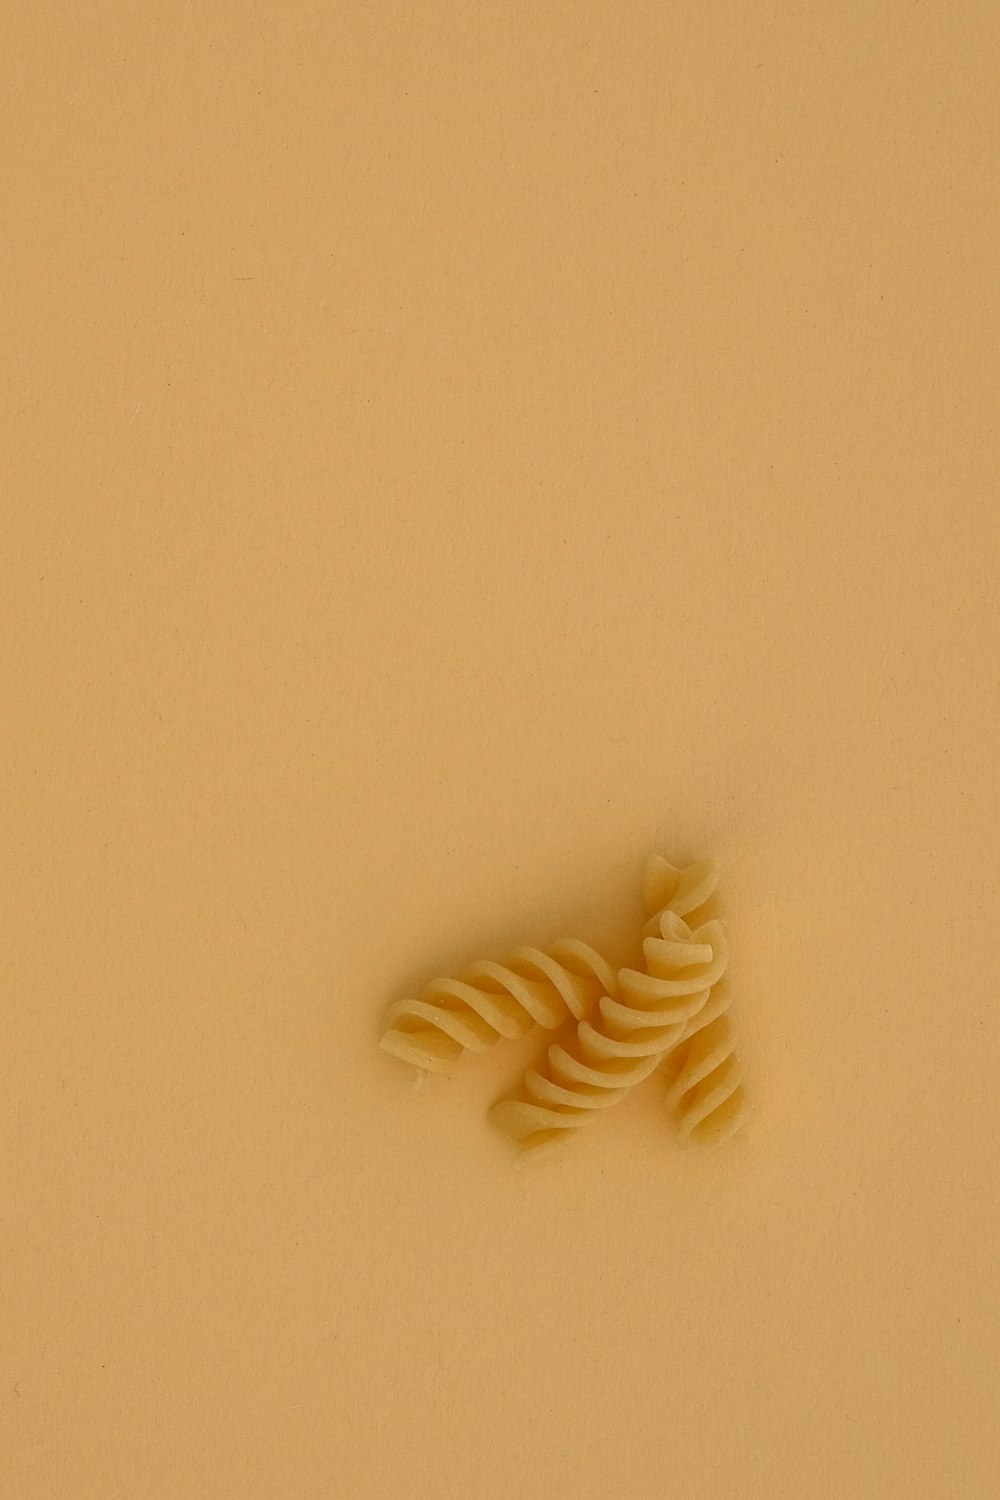 white spiral pasta on white table